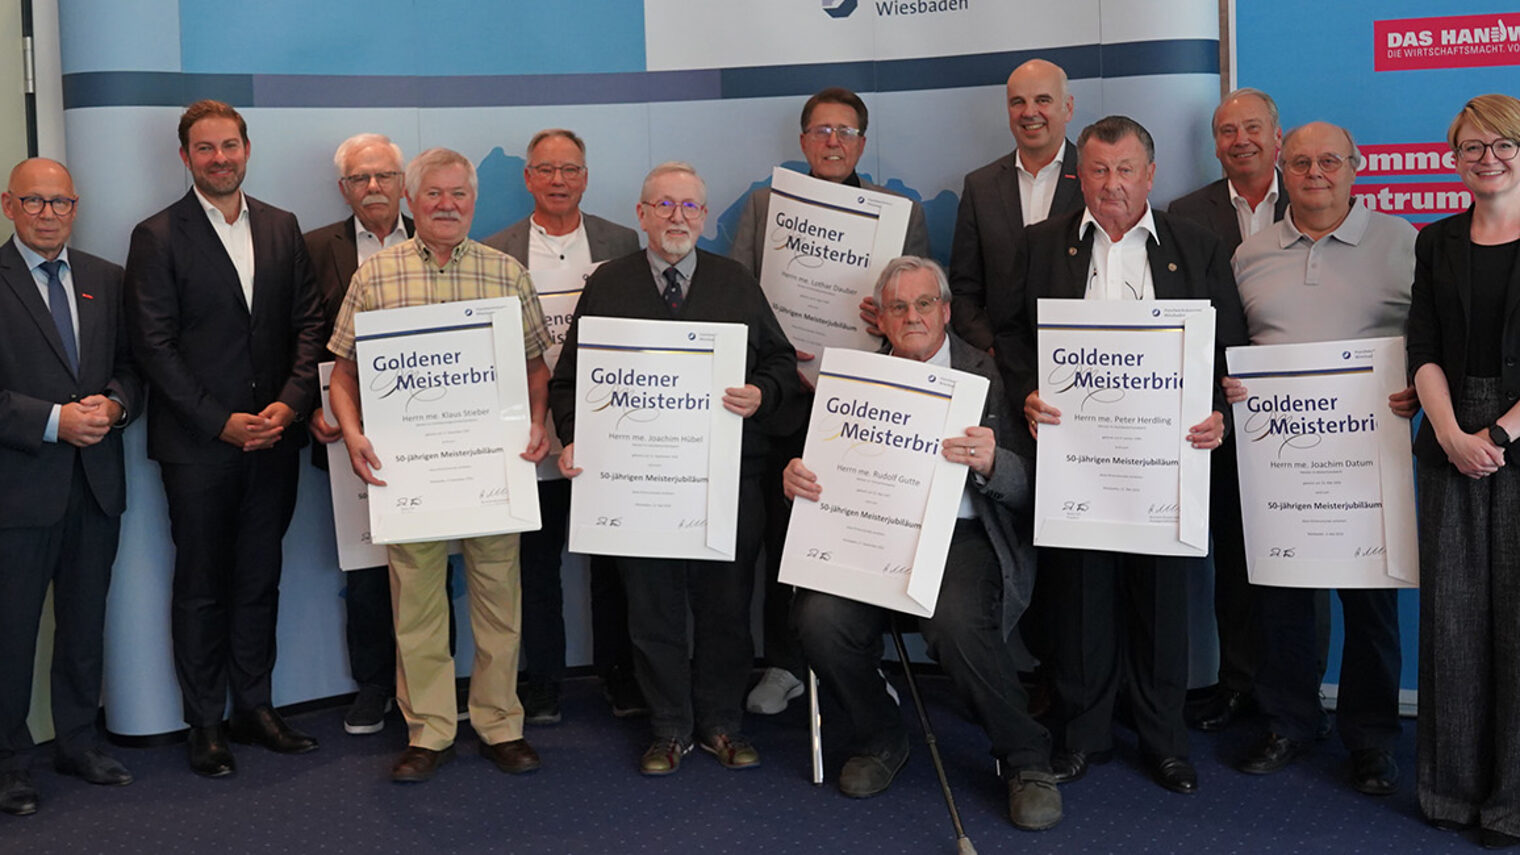 Gruppenfoto der Handwerksmeister aus Wiesbaden und dem Rheingau-Taunus-Kreis die den Goldenen Meisterbrief erhalten haben.